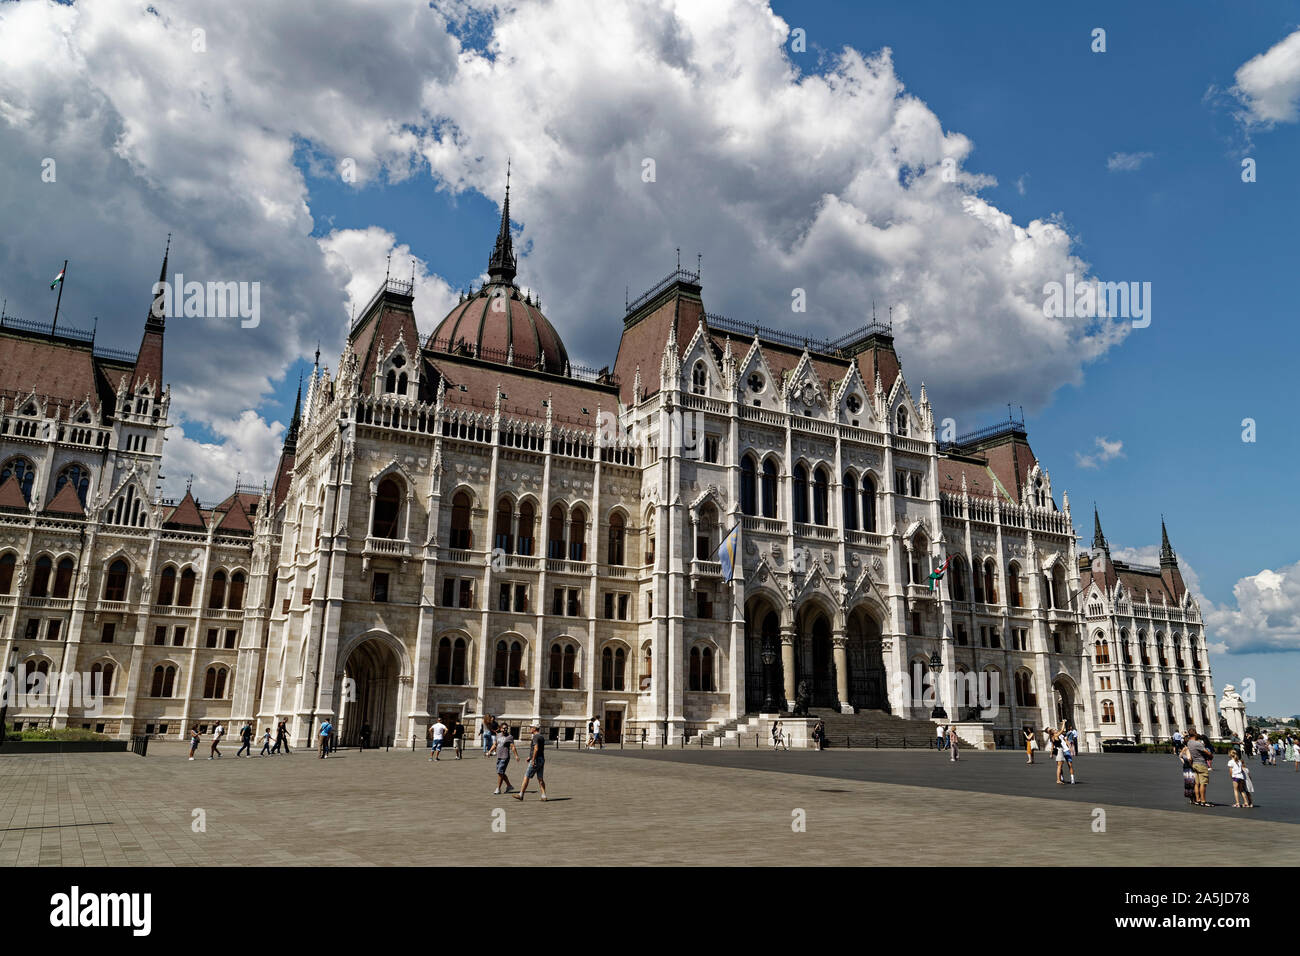 Budapest, Ungarn. 15 August, 2019. Das ungarische Parlament Gebäude (orszaghaz) am östlichen Ufer der Donau in Budapest, Ungarn, liegt. Stockfoto